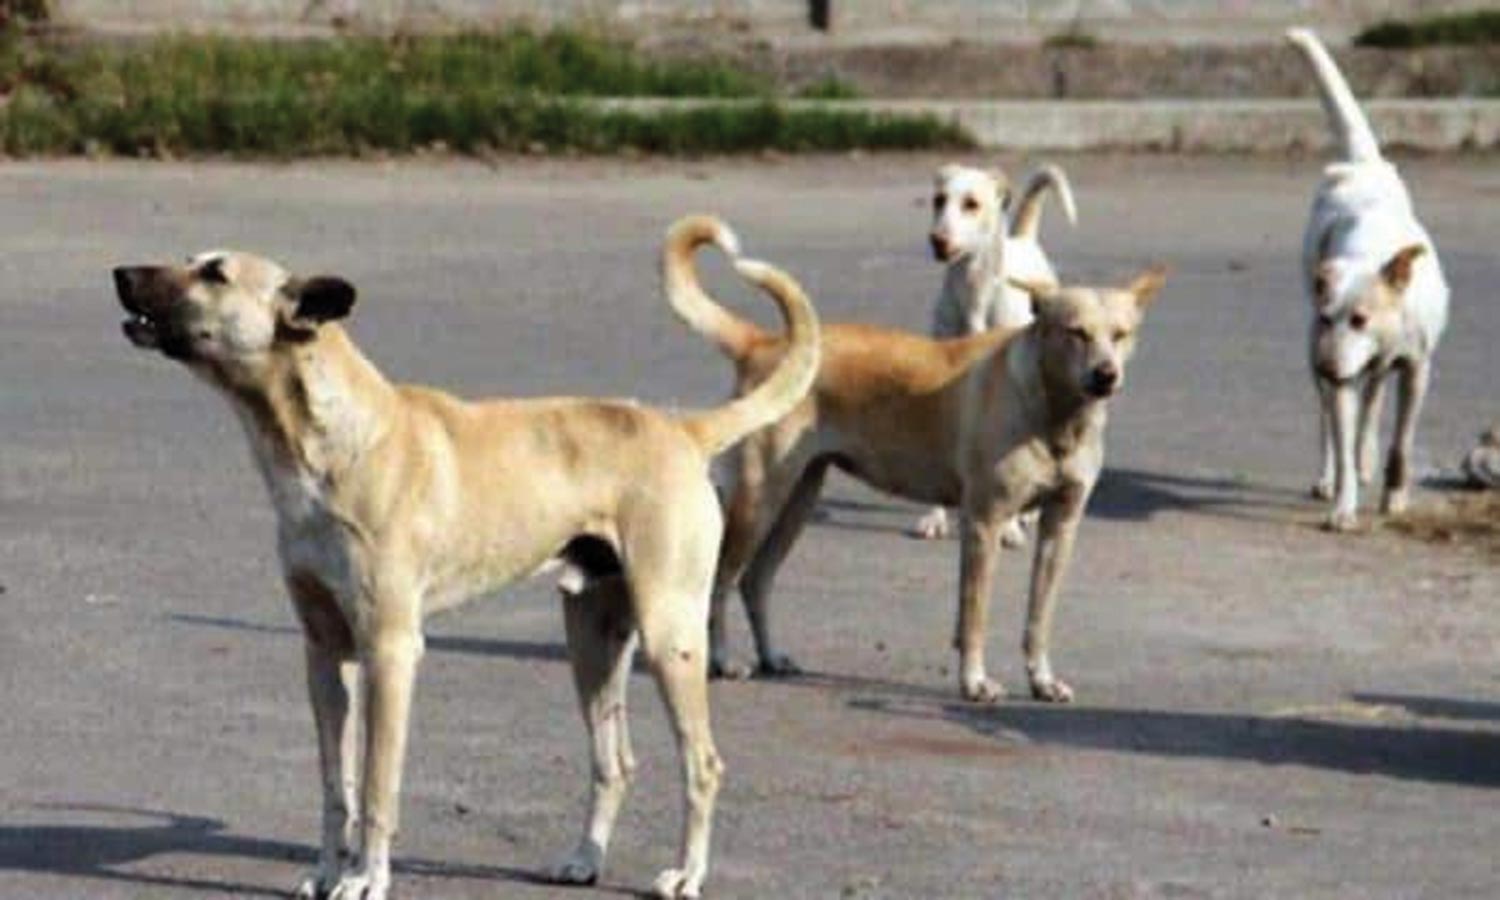 சென்னையில் நாய்க்கடியால் சிகிச்சைக்கு வருபவர்கள் எண்ணிக்கை அதிகரிப்பு |  Increase in the number of people coming for dog bite treatment in Chennai